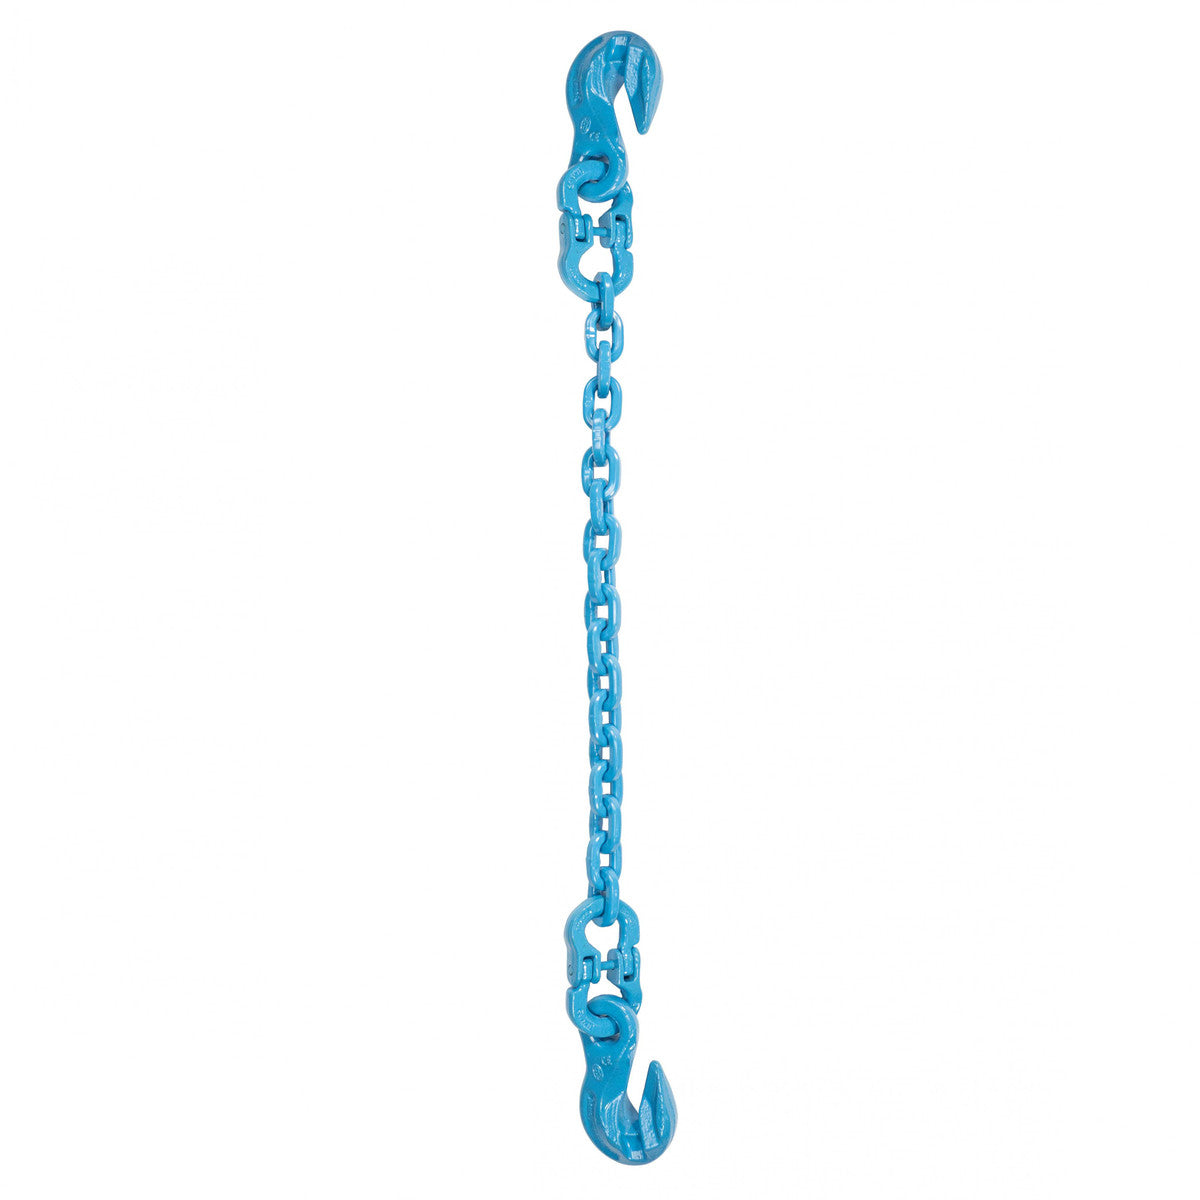 9/32" x 8' - Pewag Single Leg Chain Sling w/ Grab & Grab Hooks - Grade 120